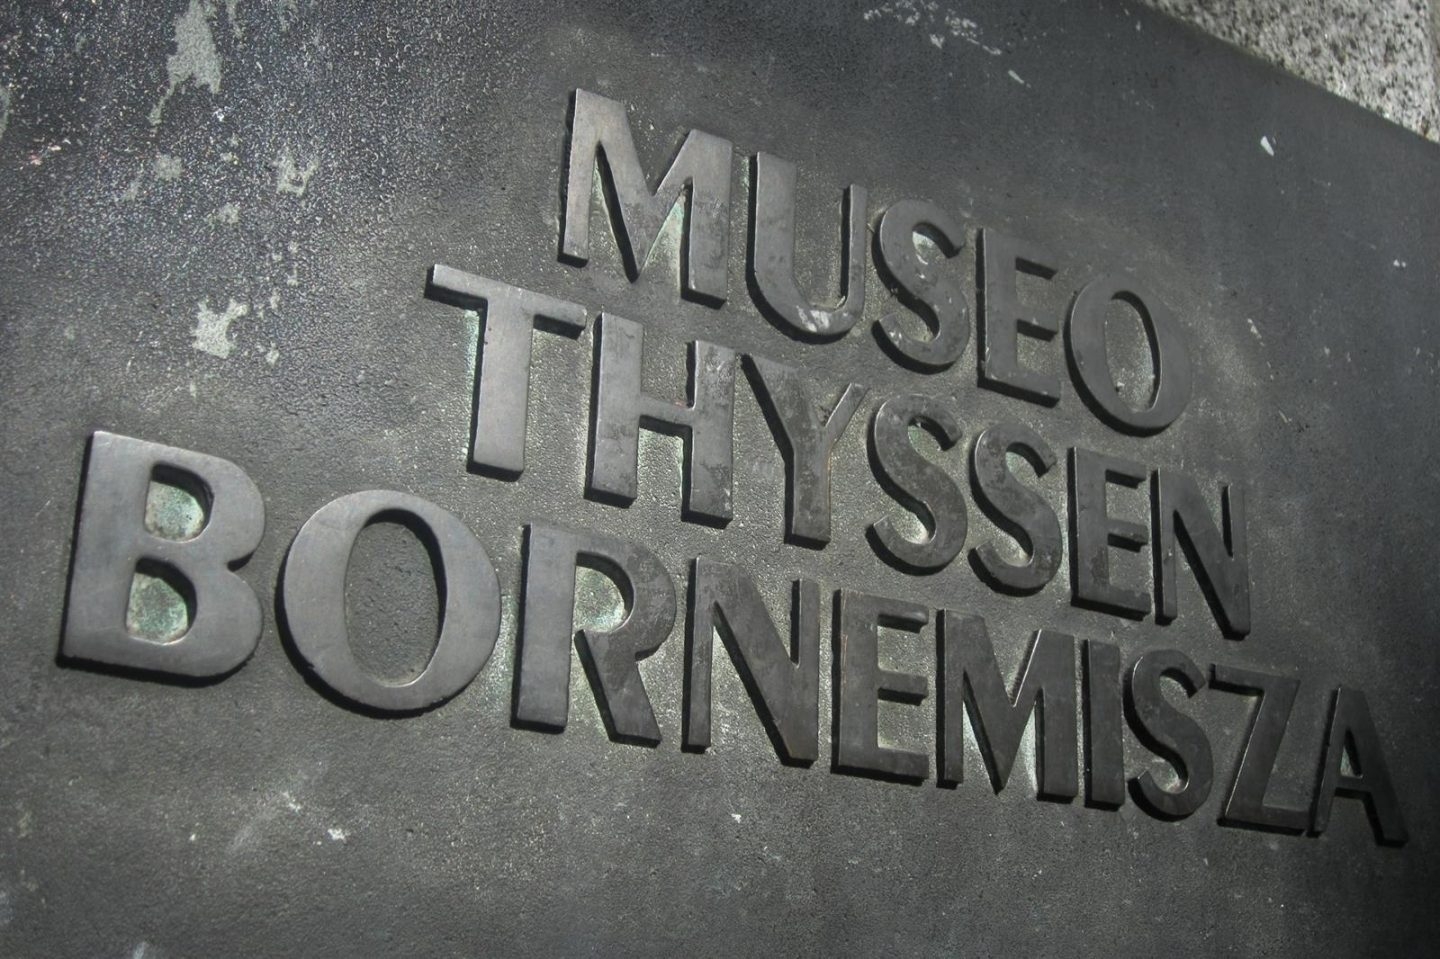 El Museo Thyssen de Madrid.